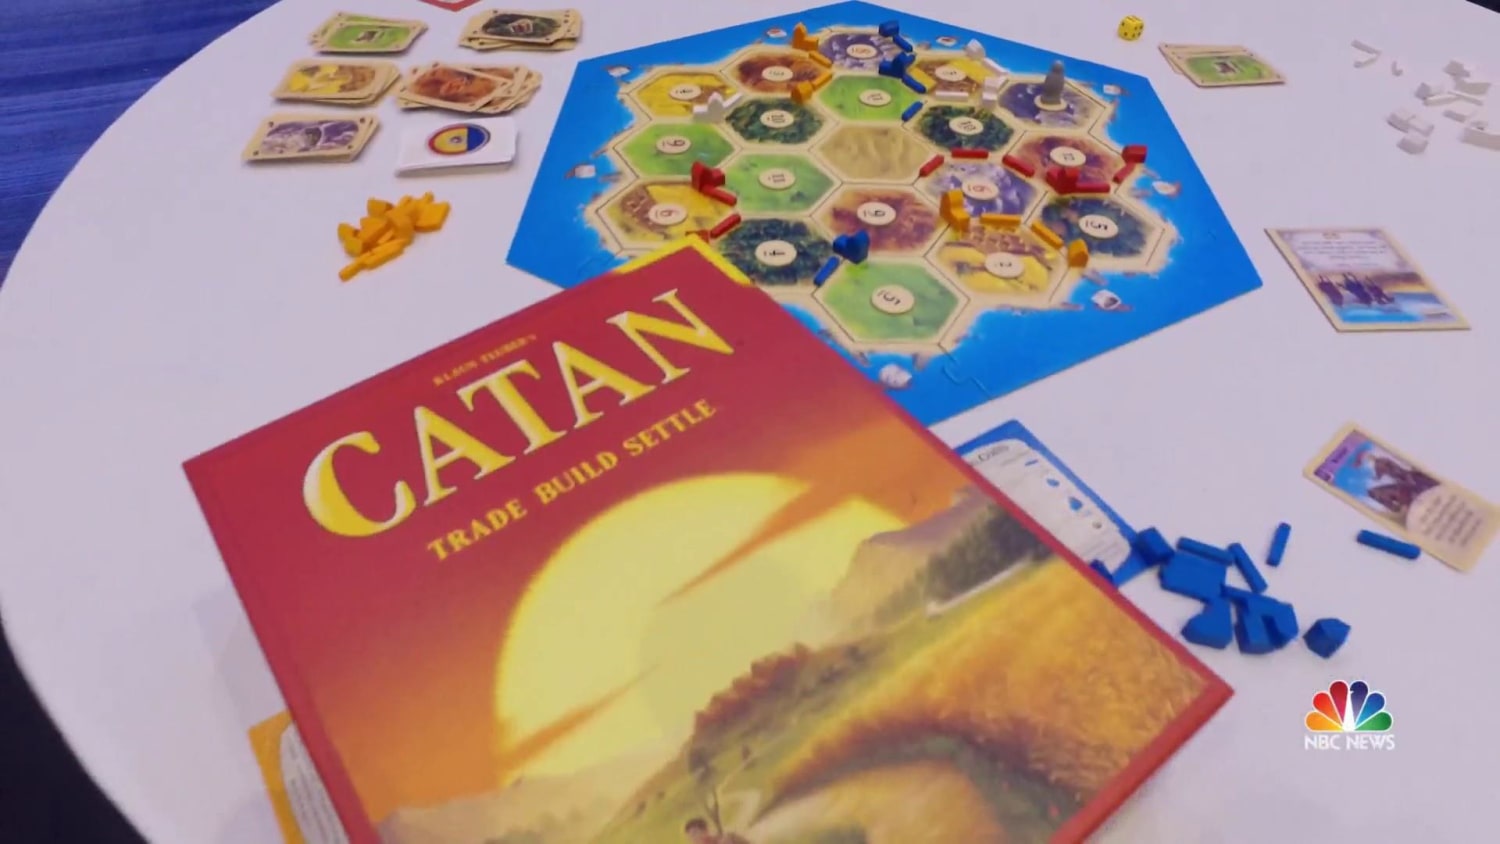 Catan board game creator Klaus Teuber dies at age 70 : NPR